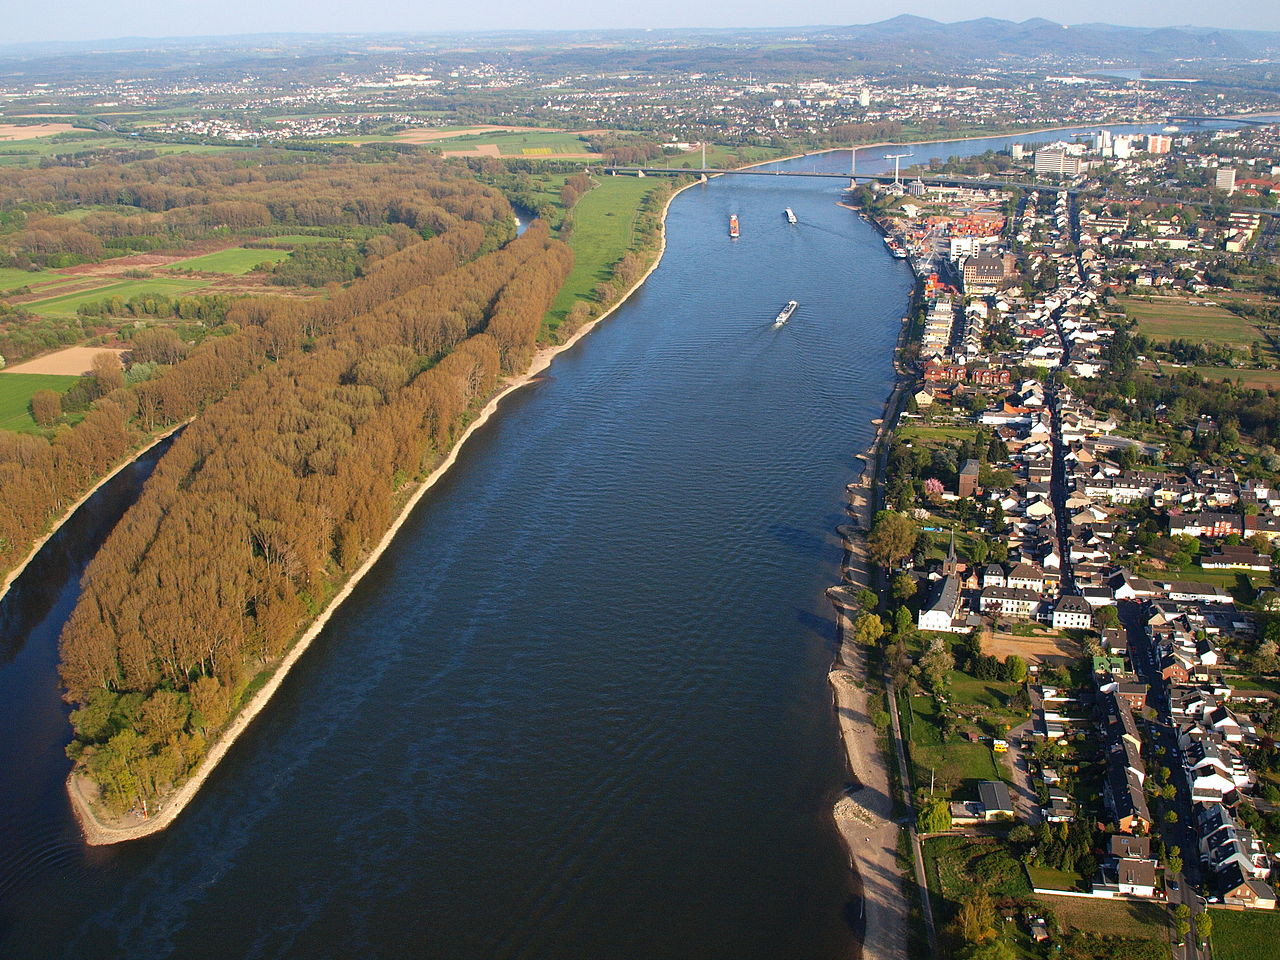 Thả hồn lơ đãng bên sông Rhine - Dòng sông mộng mơ nhất châu Âu - ảnh 5